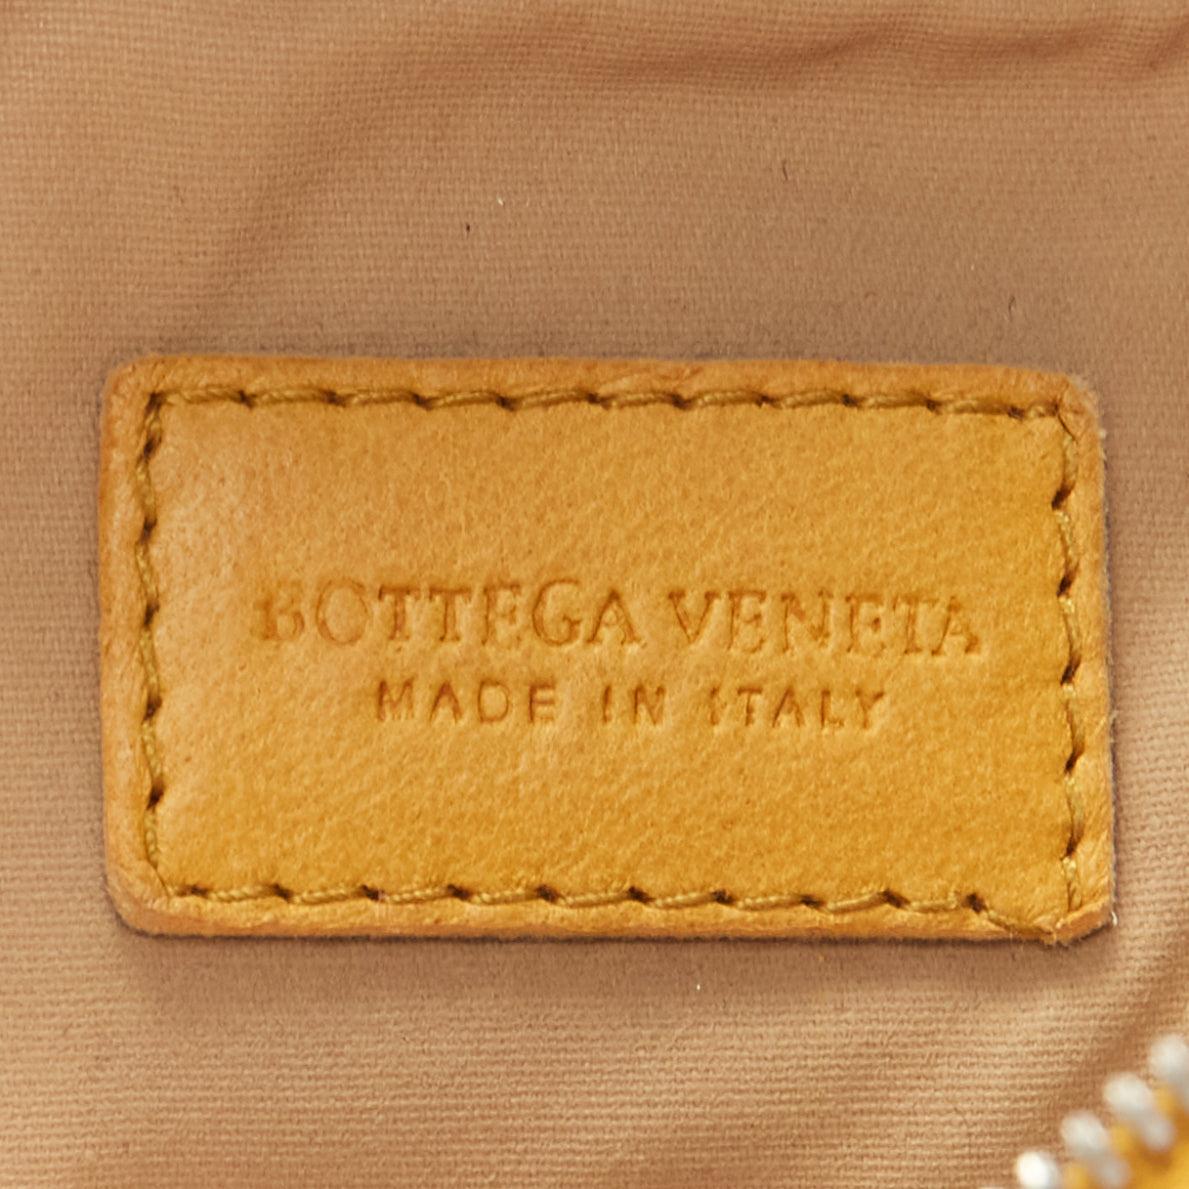 BOTTEGA VENETA butter yellow intrecciato woven silver chain wrist pouch bag For Sale 4